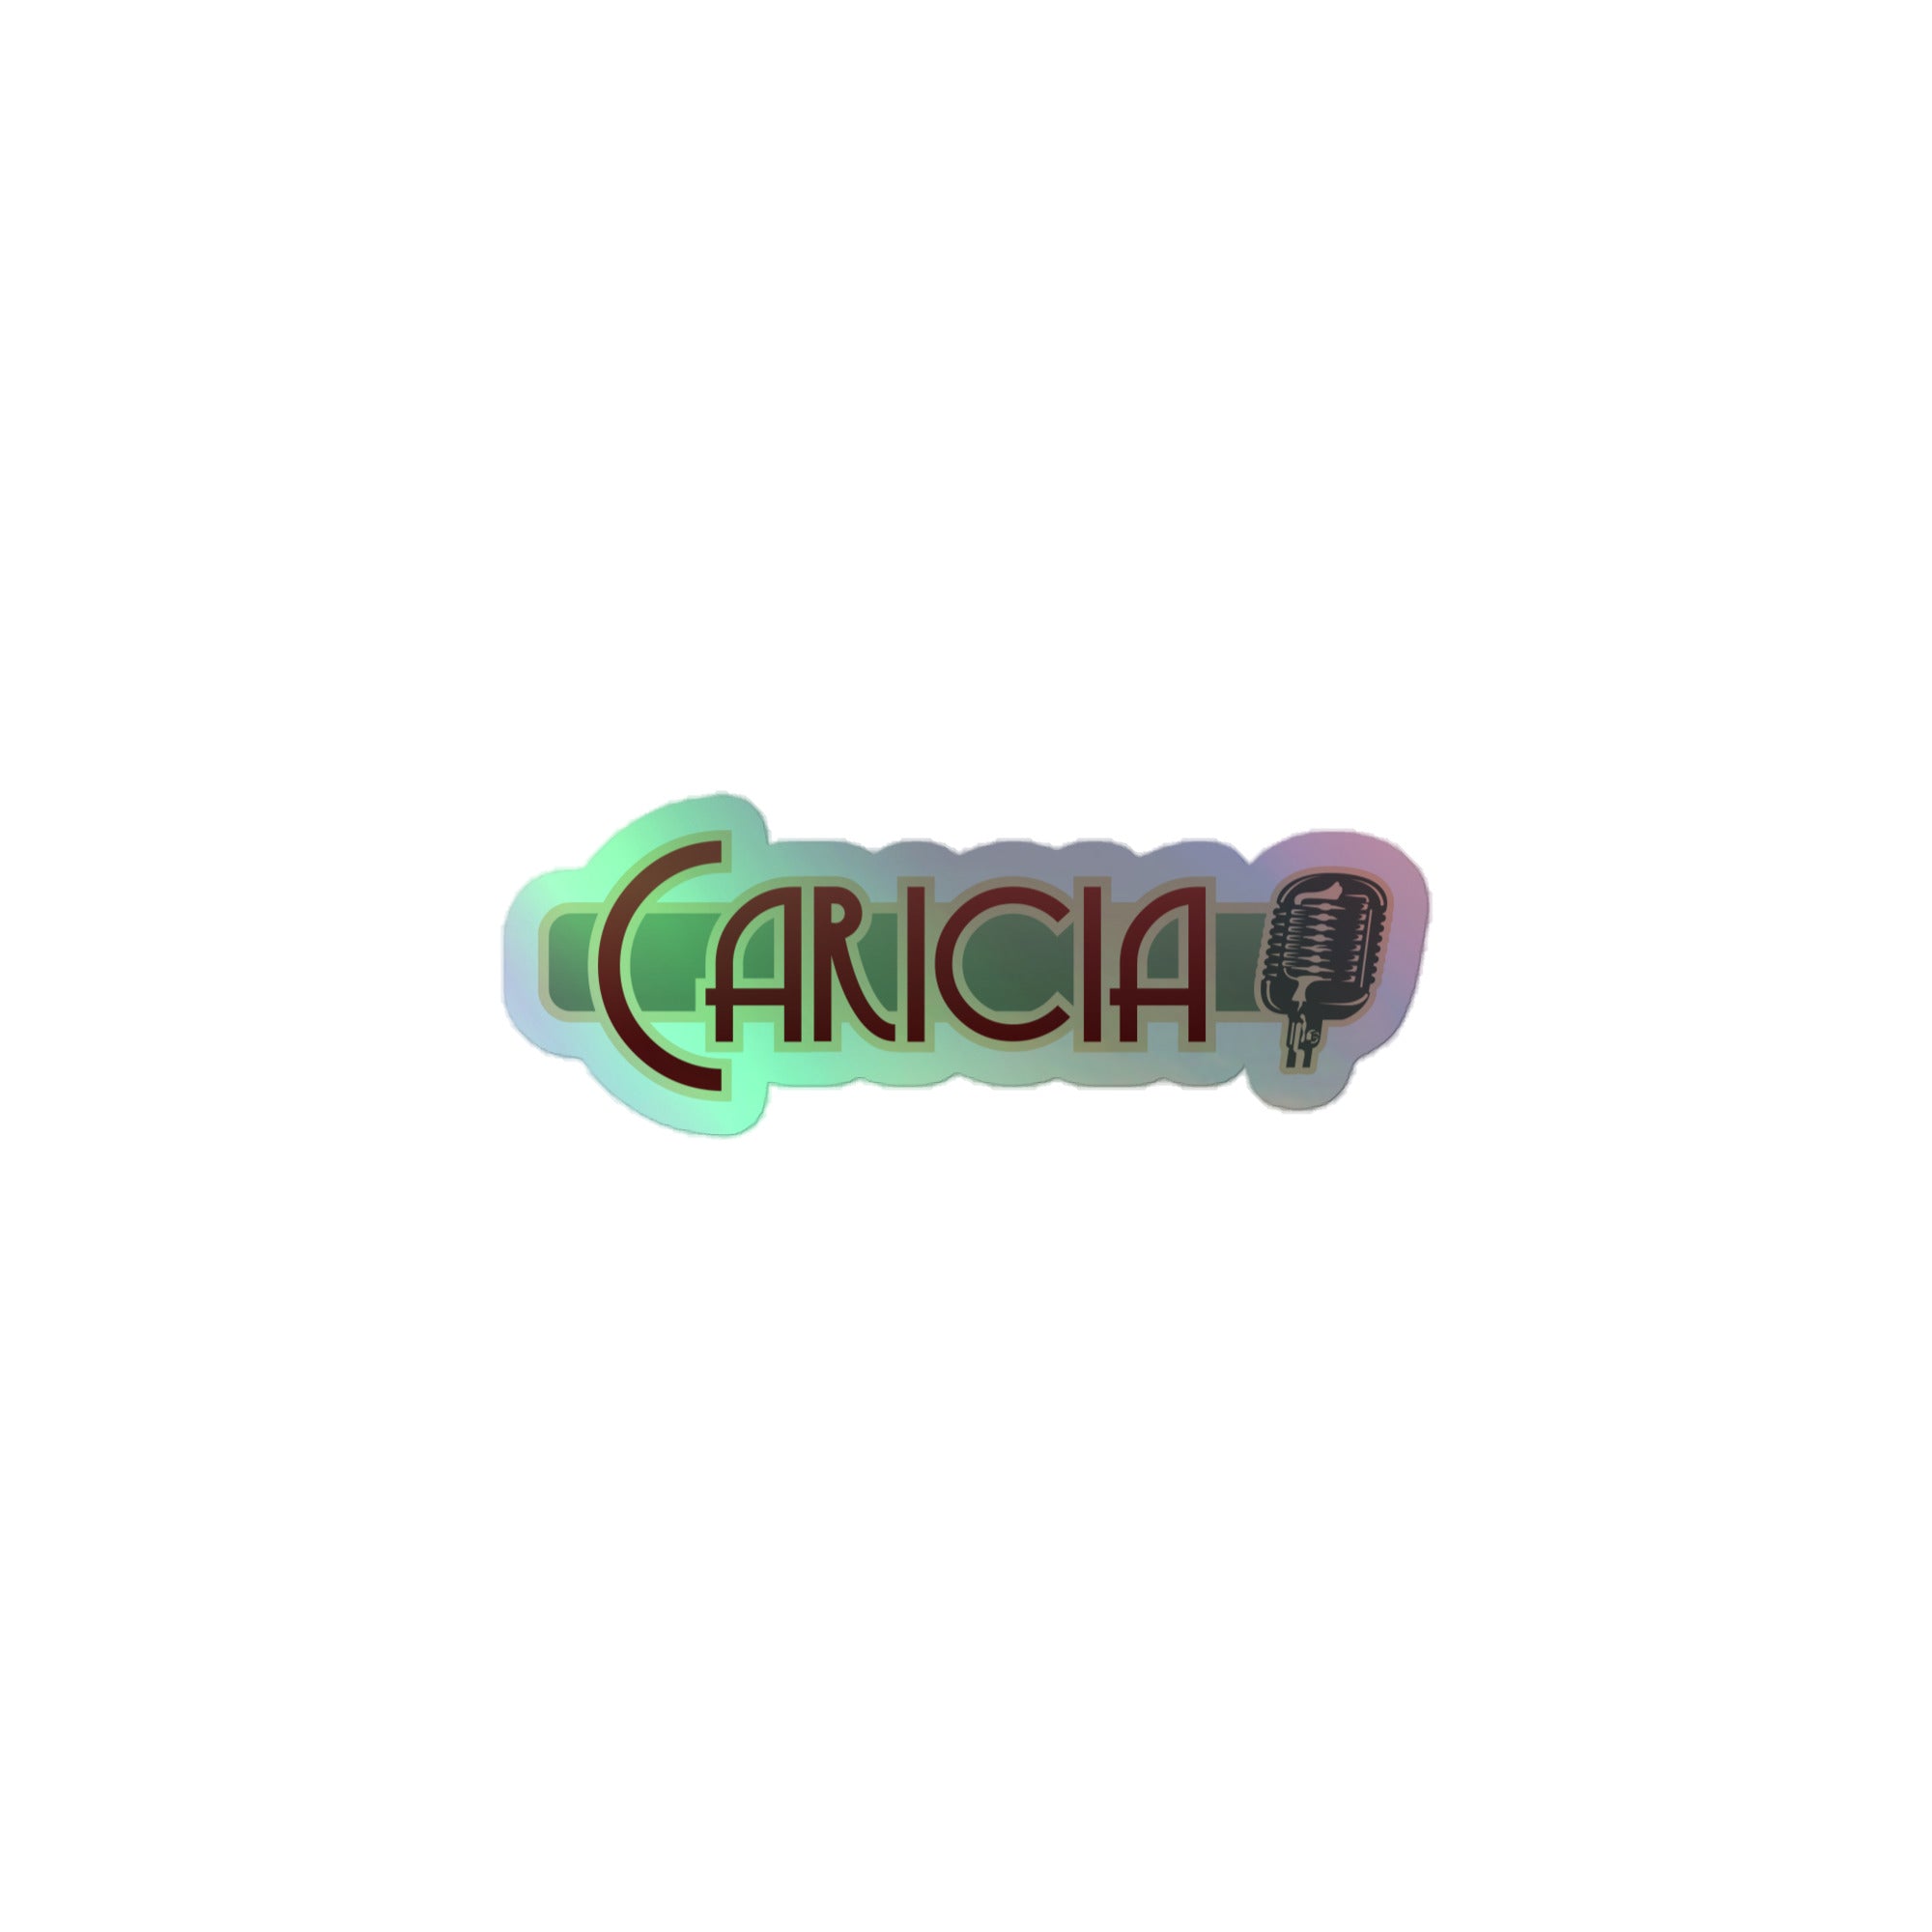 Caricia: Holographic Sticker